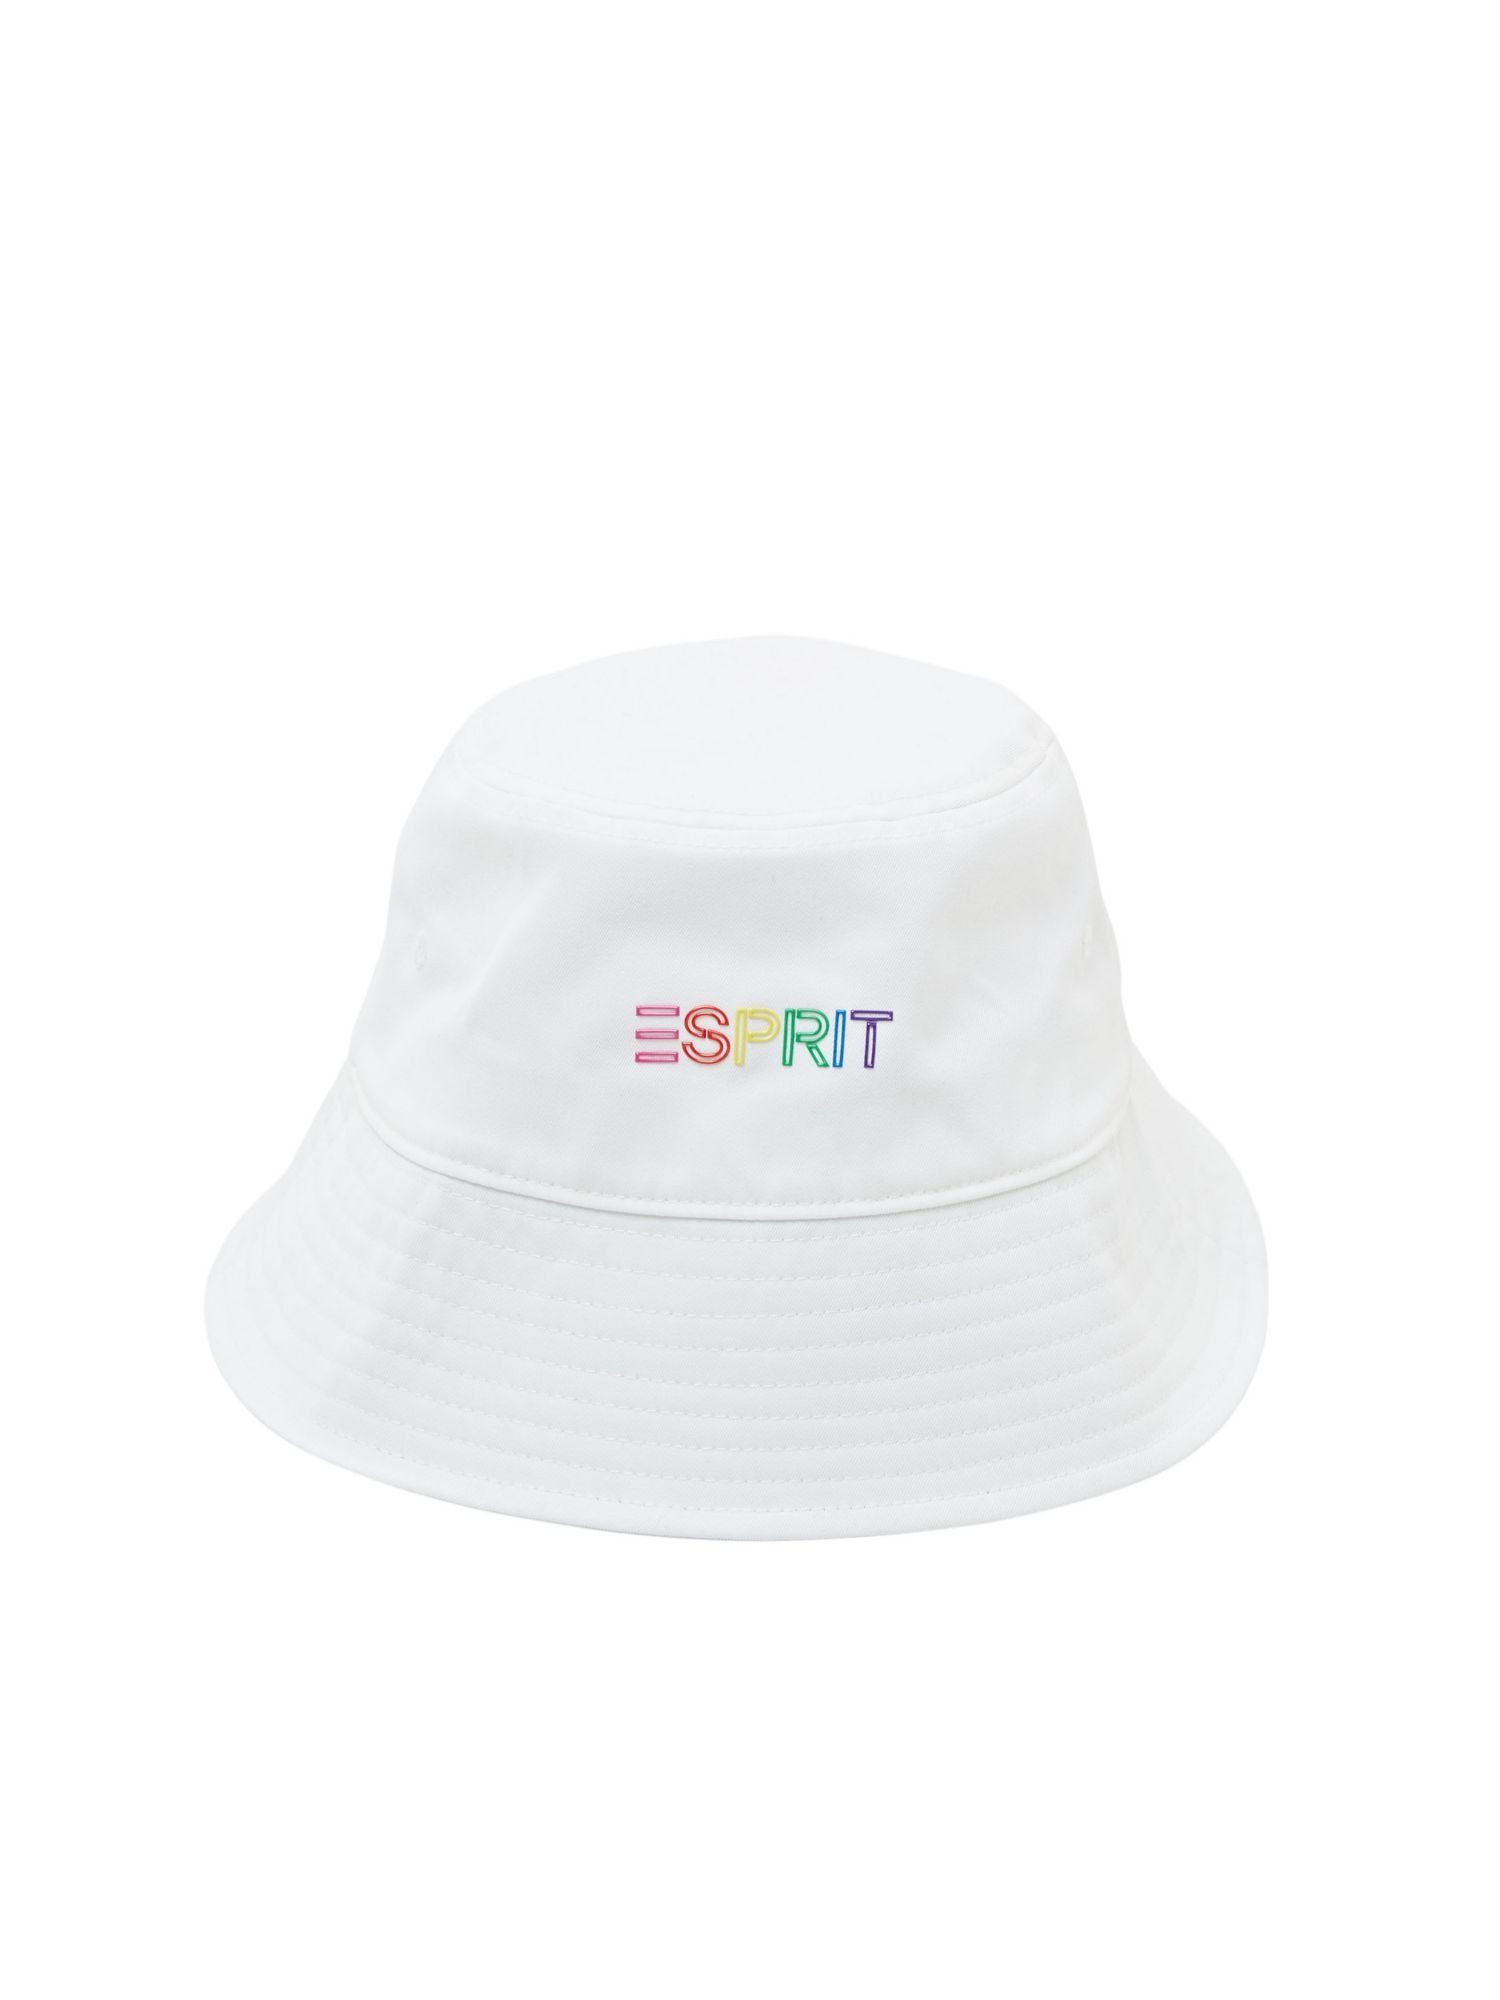 Esprit Baseball Cap Bucket Hat aus Twill mit Applikation WHITE